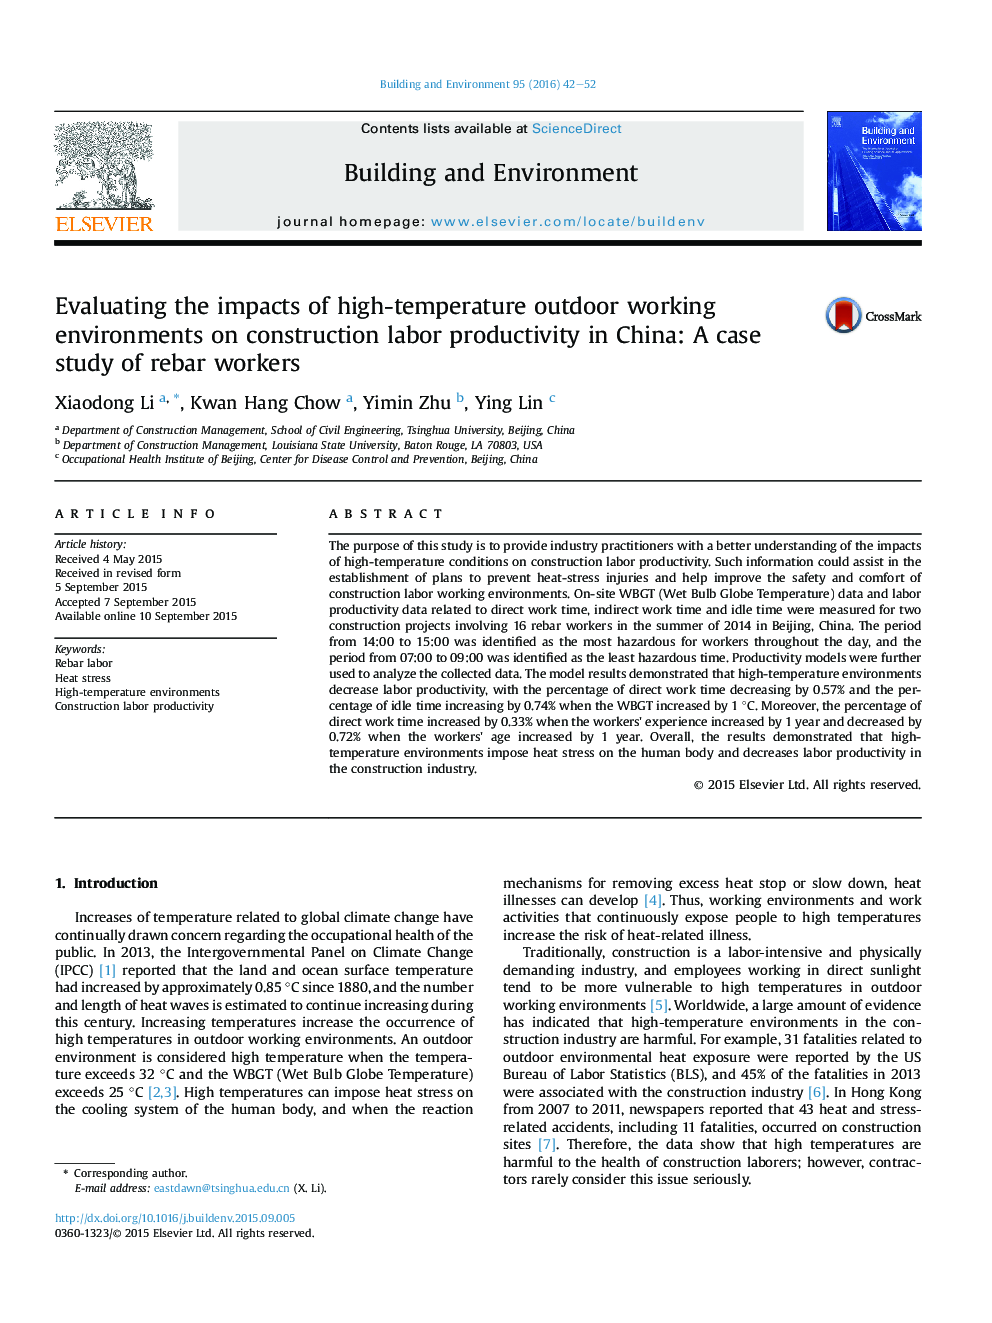 ارزیابی تاثیرات محیط کاری بیرونی با دمای بالا روی بهره وری نیروی کار ساخت و ساز در چین: مطالعه موردی کارگران آرماتوربند